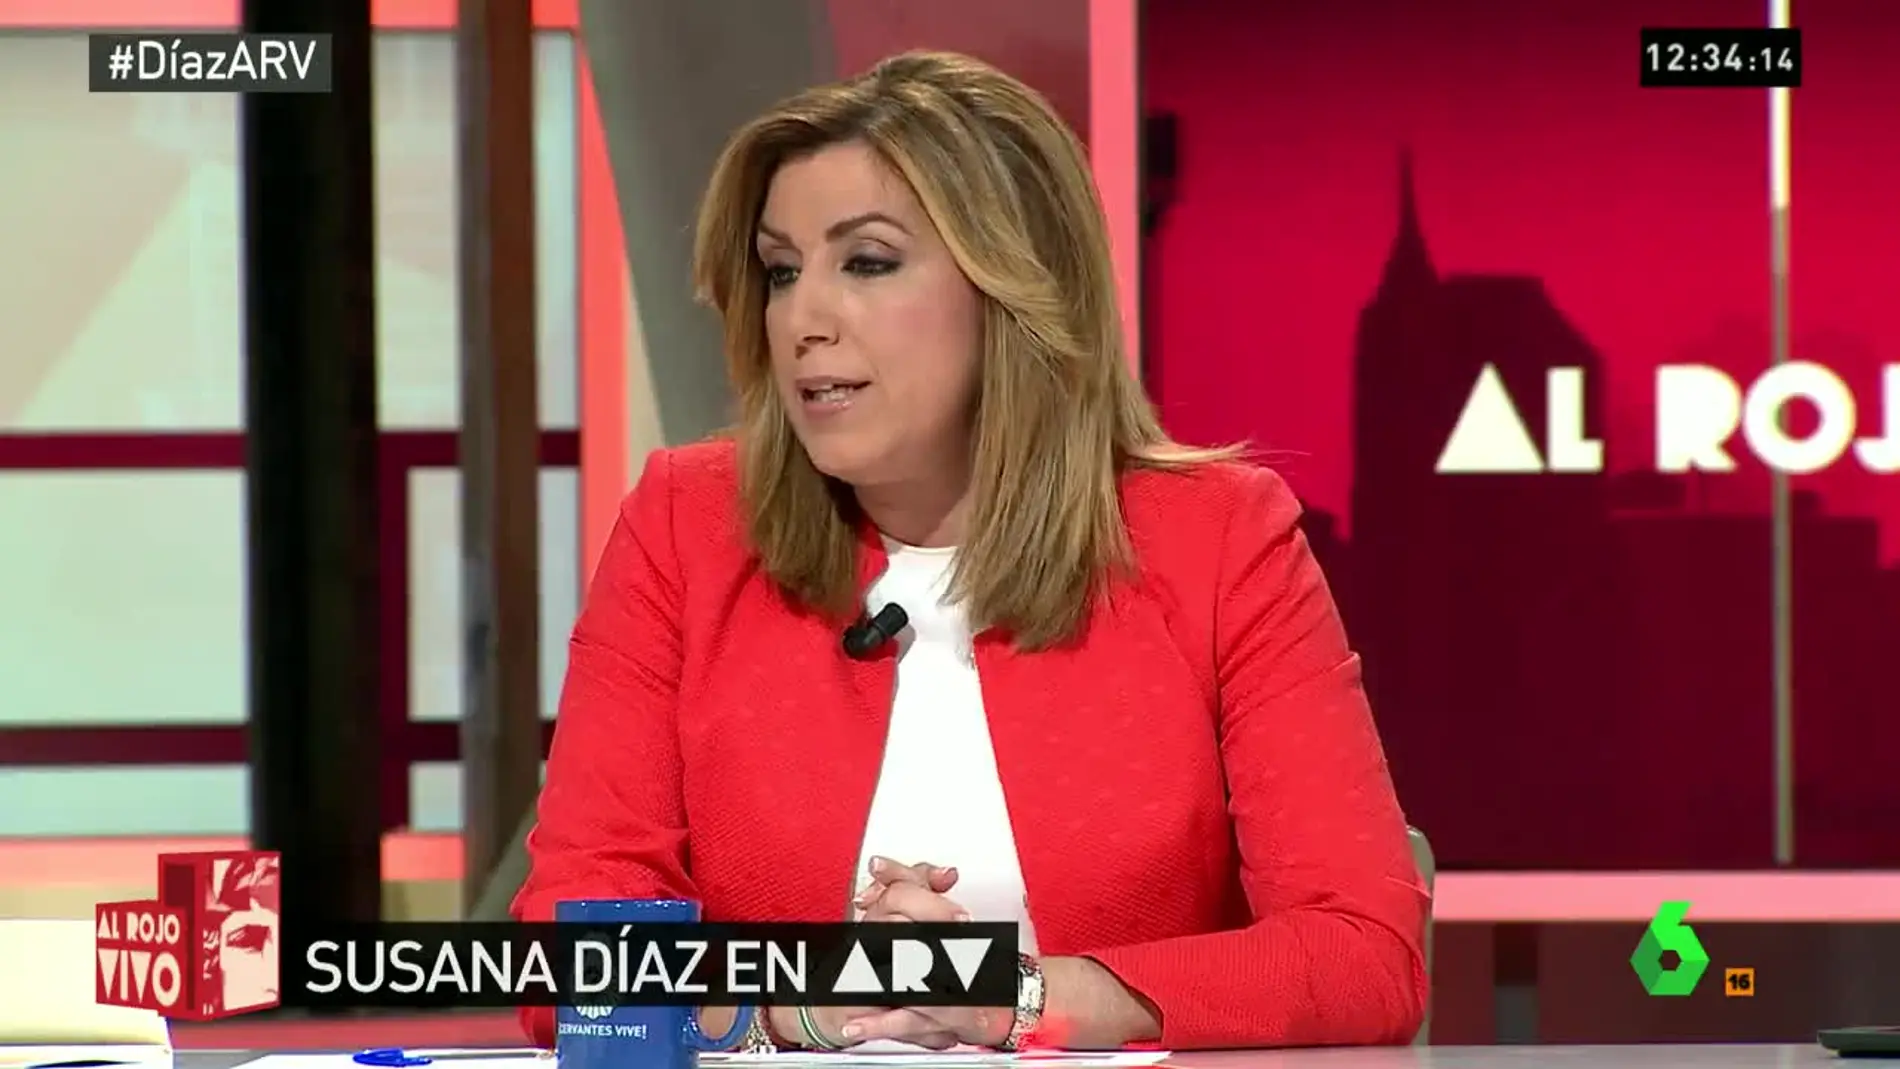 Susana Díaz en arv